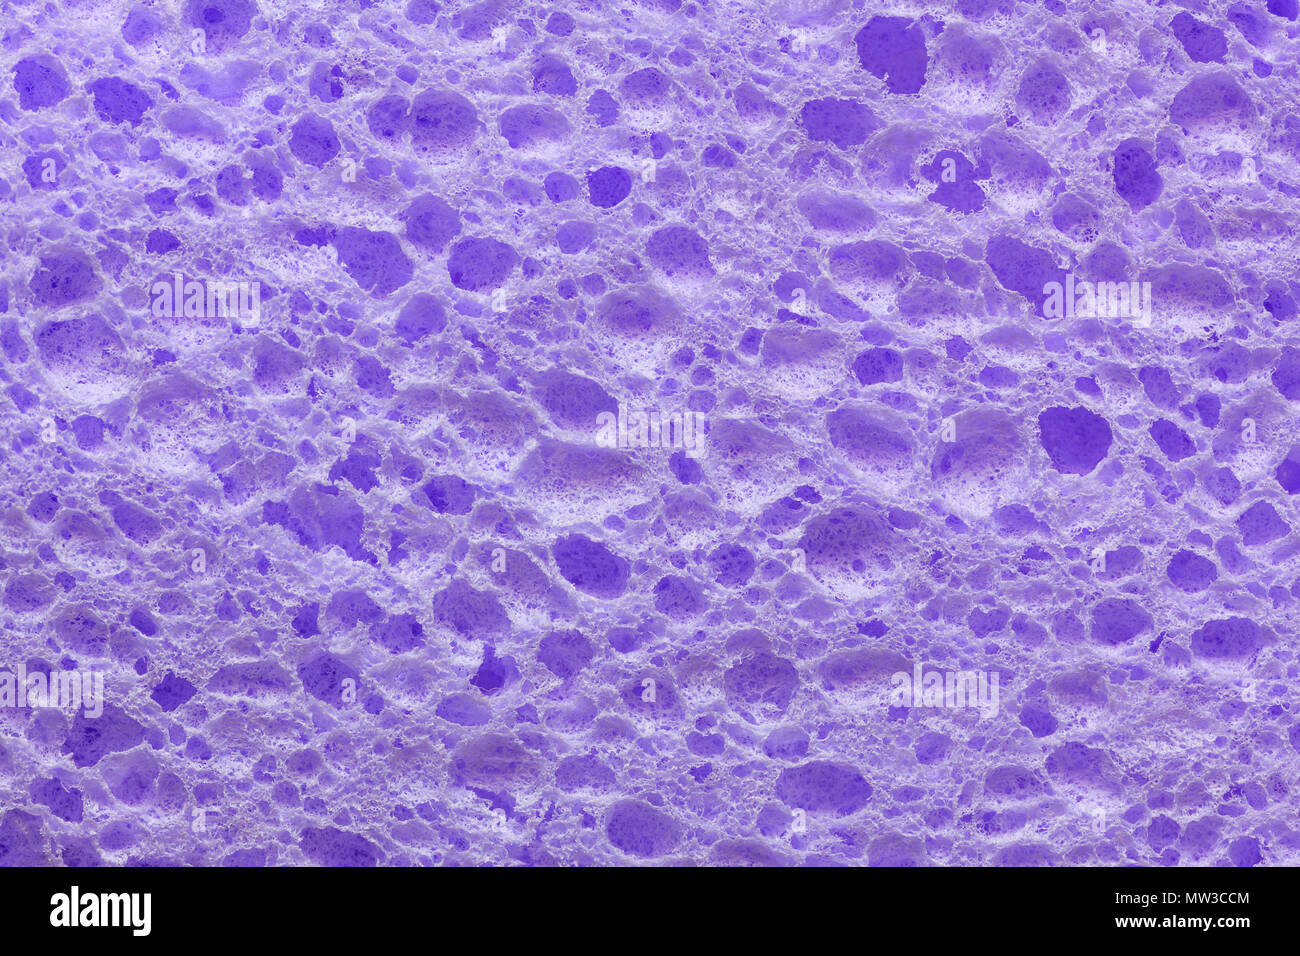 A colorful sponge texture, violet, purple sponge background Stock Photo